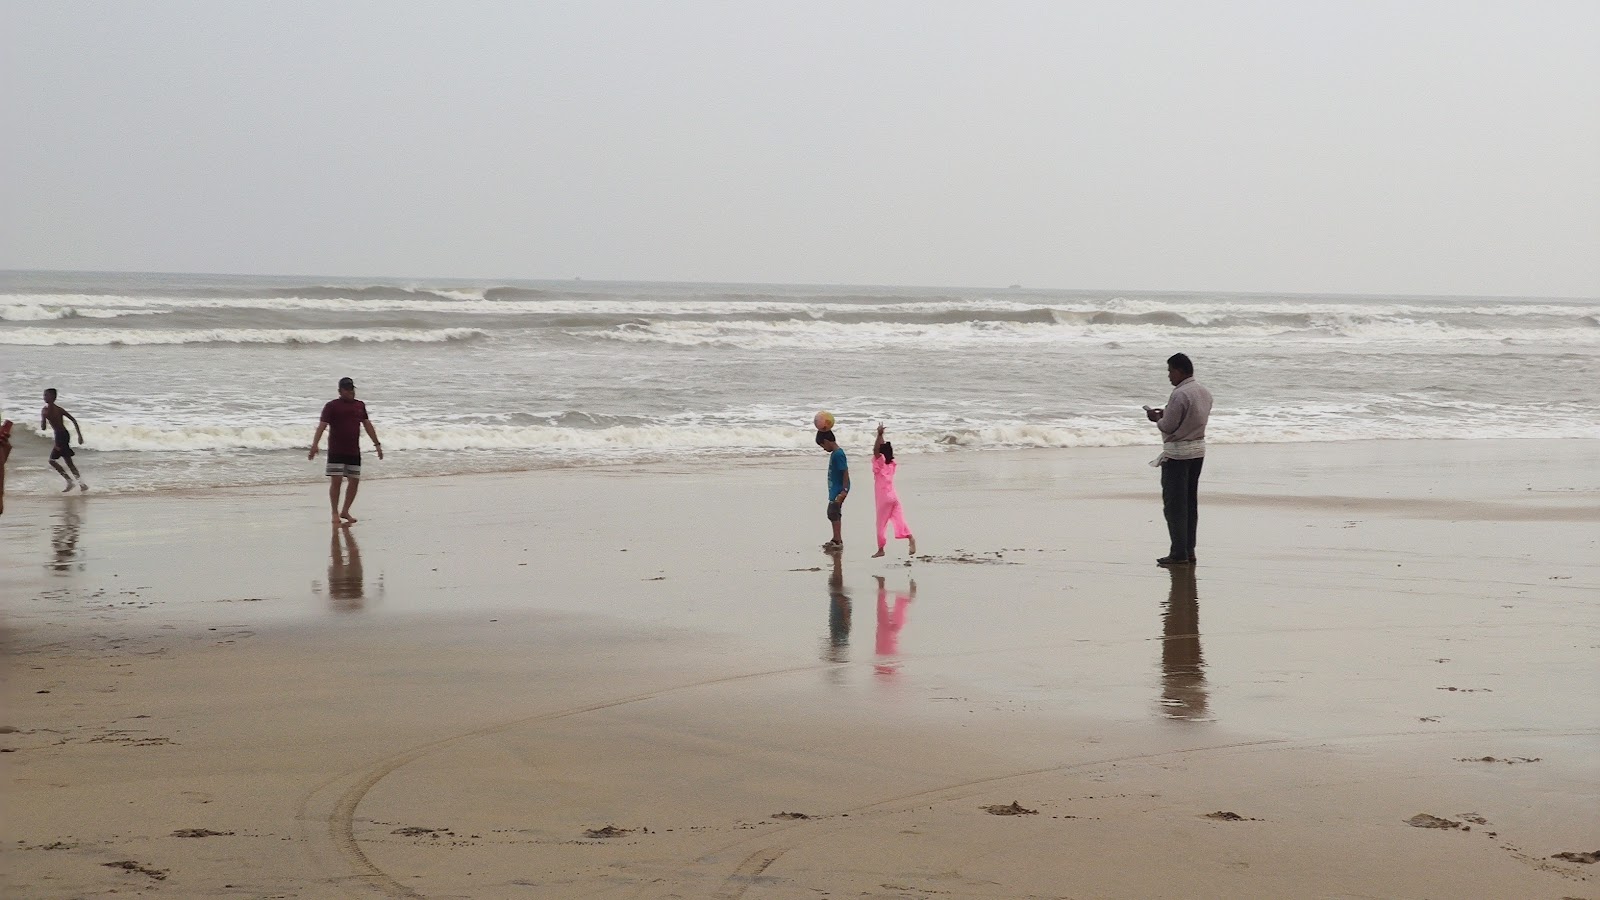 Siali Sea Beach'in fotoğrafı - rahatlamayı sevenler arasında popüler bir yer